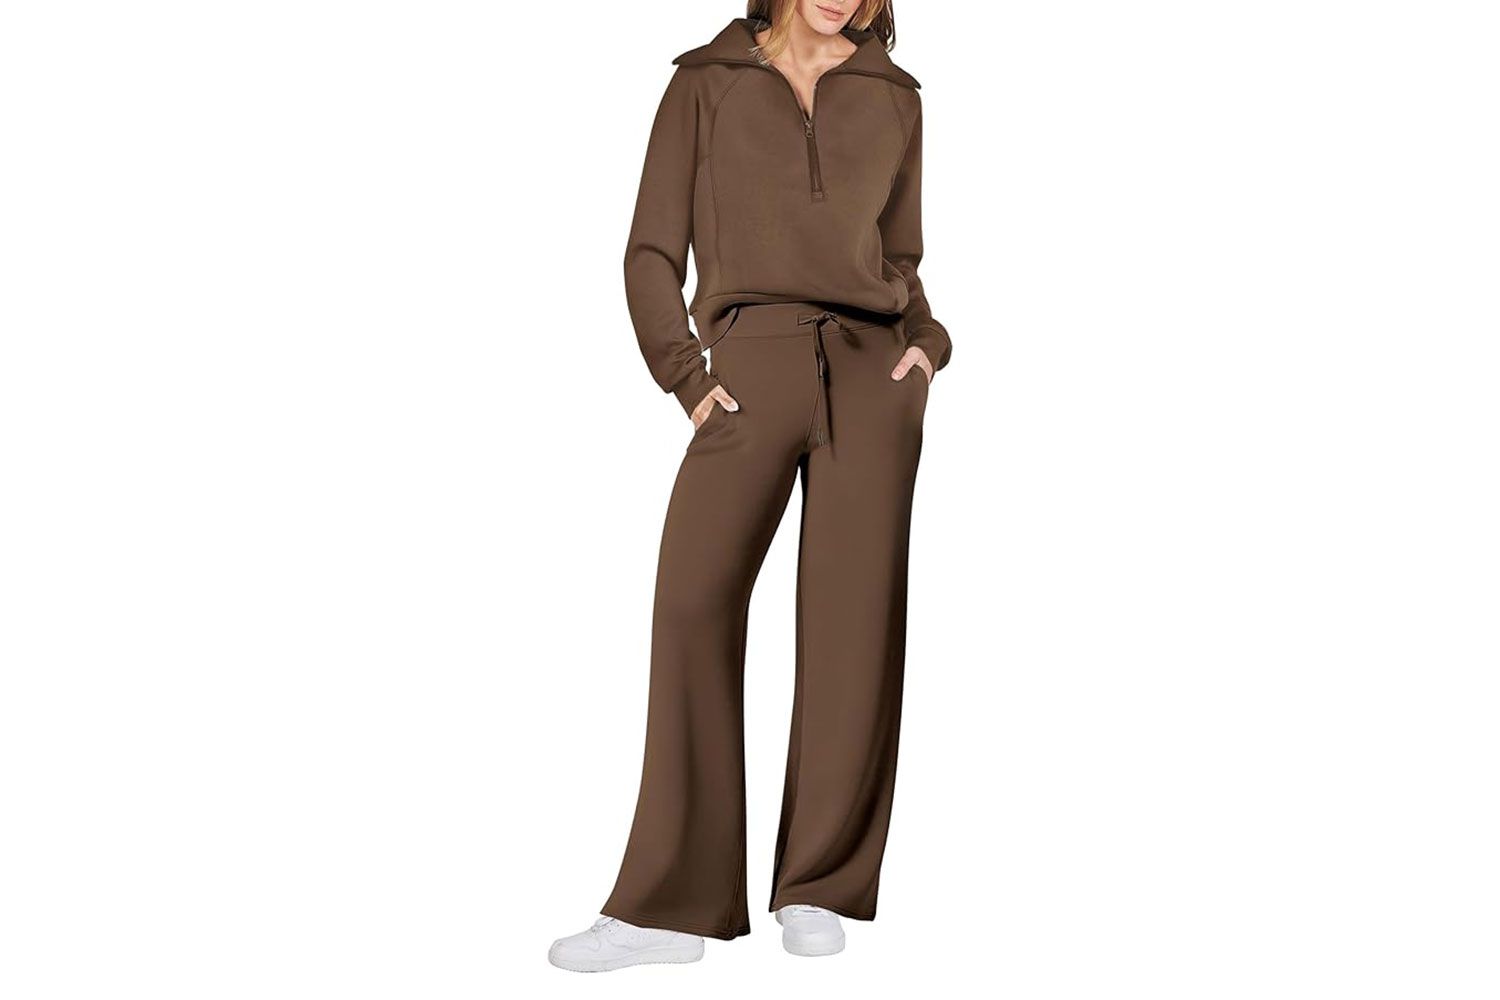 Amazon ANRABESS Women 2 Piece Outfits Sweatsuit Set